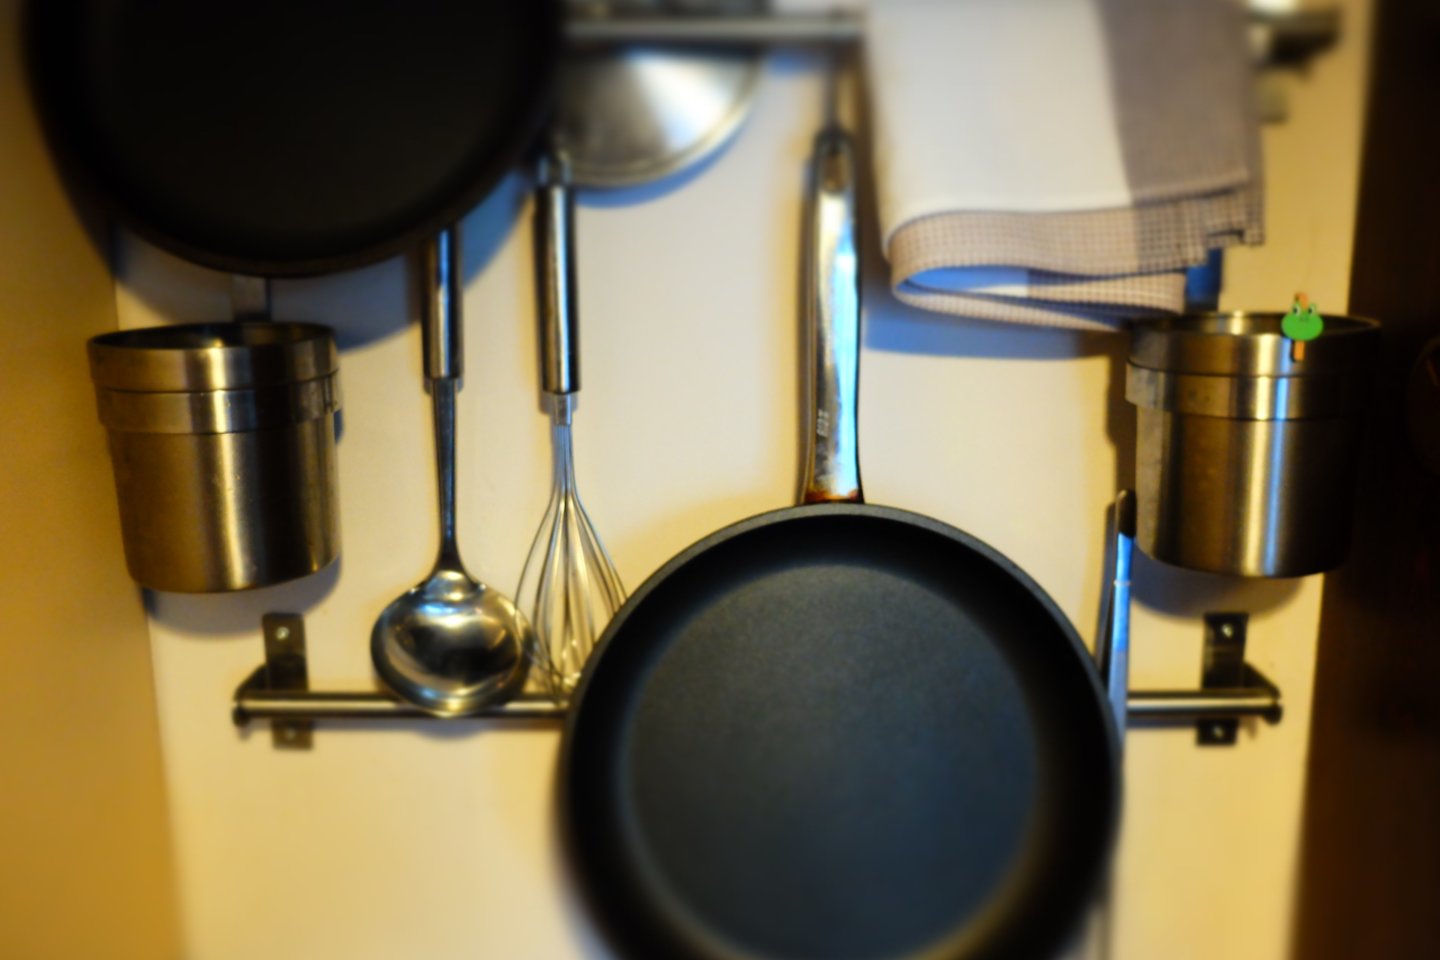  Keptuvė yra vienas pagrindinių įrankių virtuvėje.<br>Nuotr. iš „Pavarsdienorastis“.